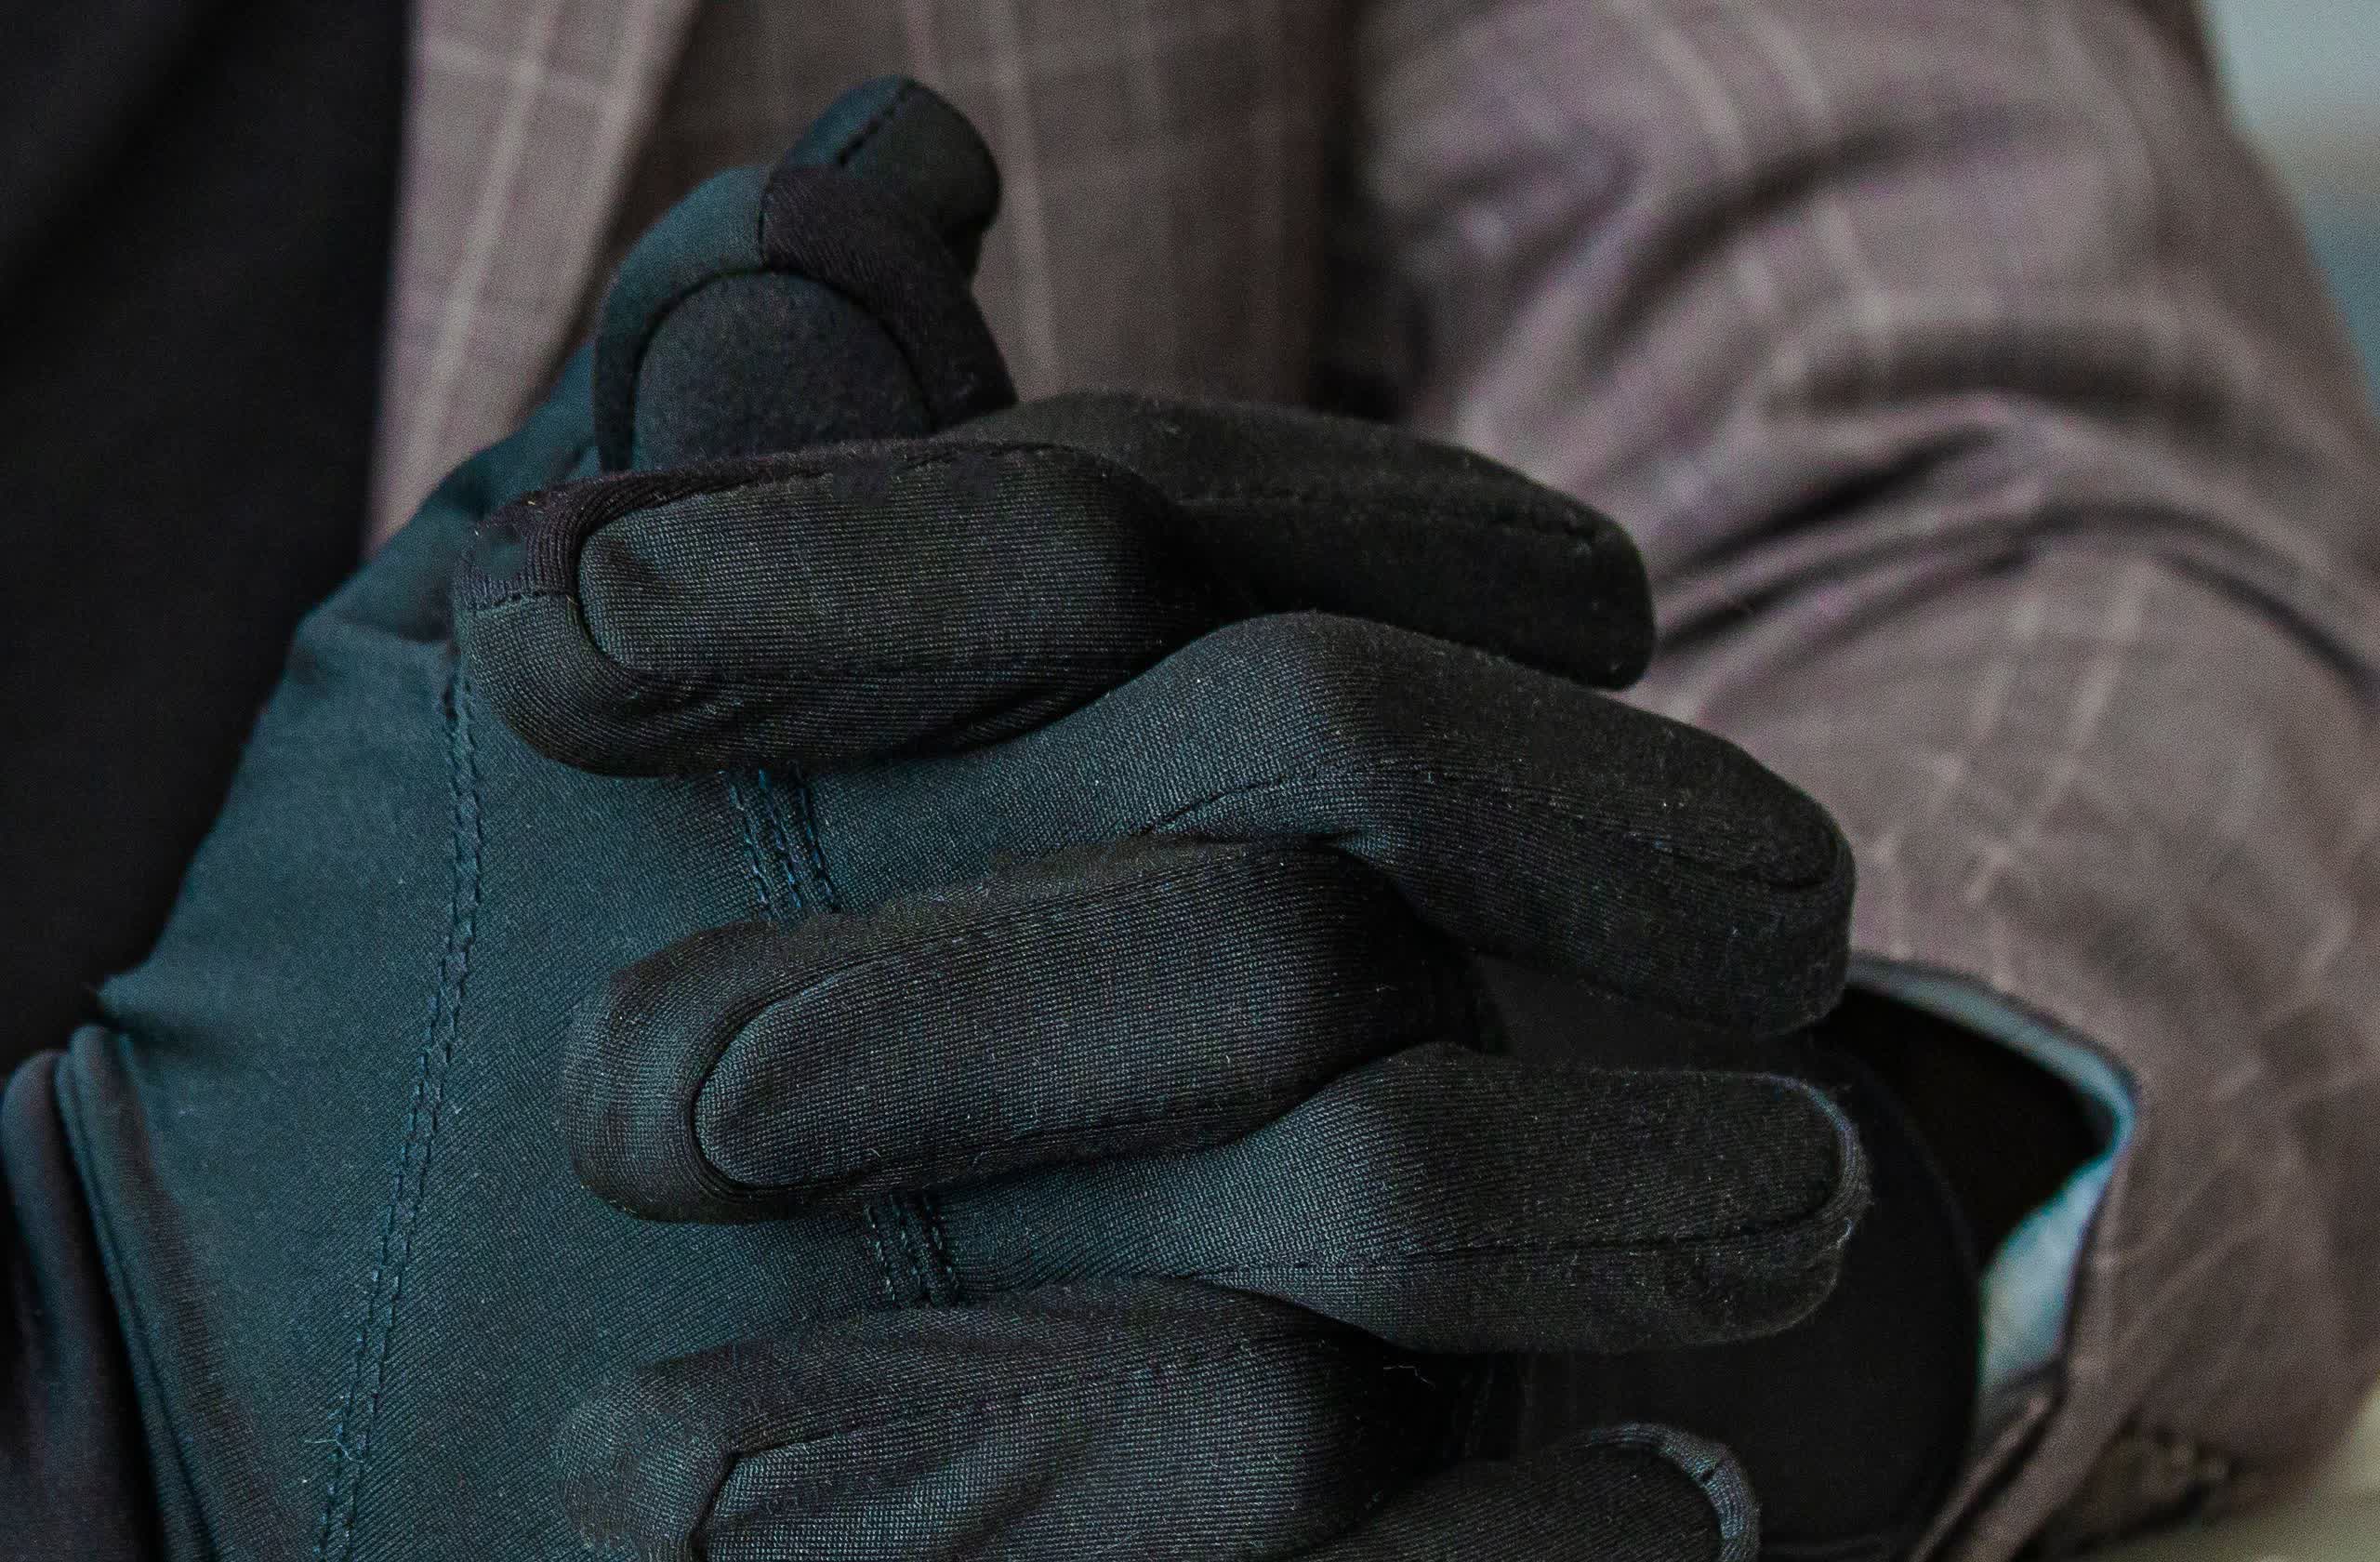 Los guantes inteligentes podrían utilizar retroalimentación háptica para enseñar habilidades físicas